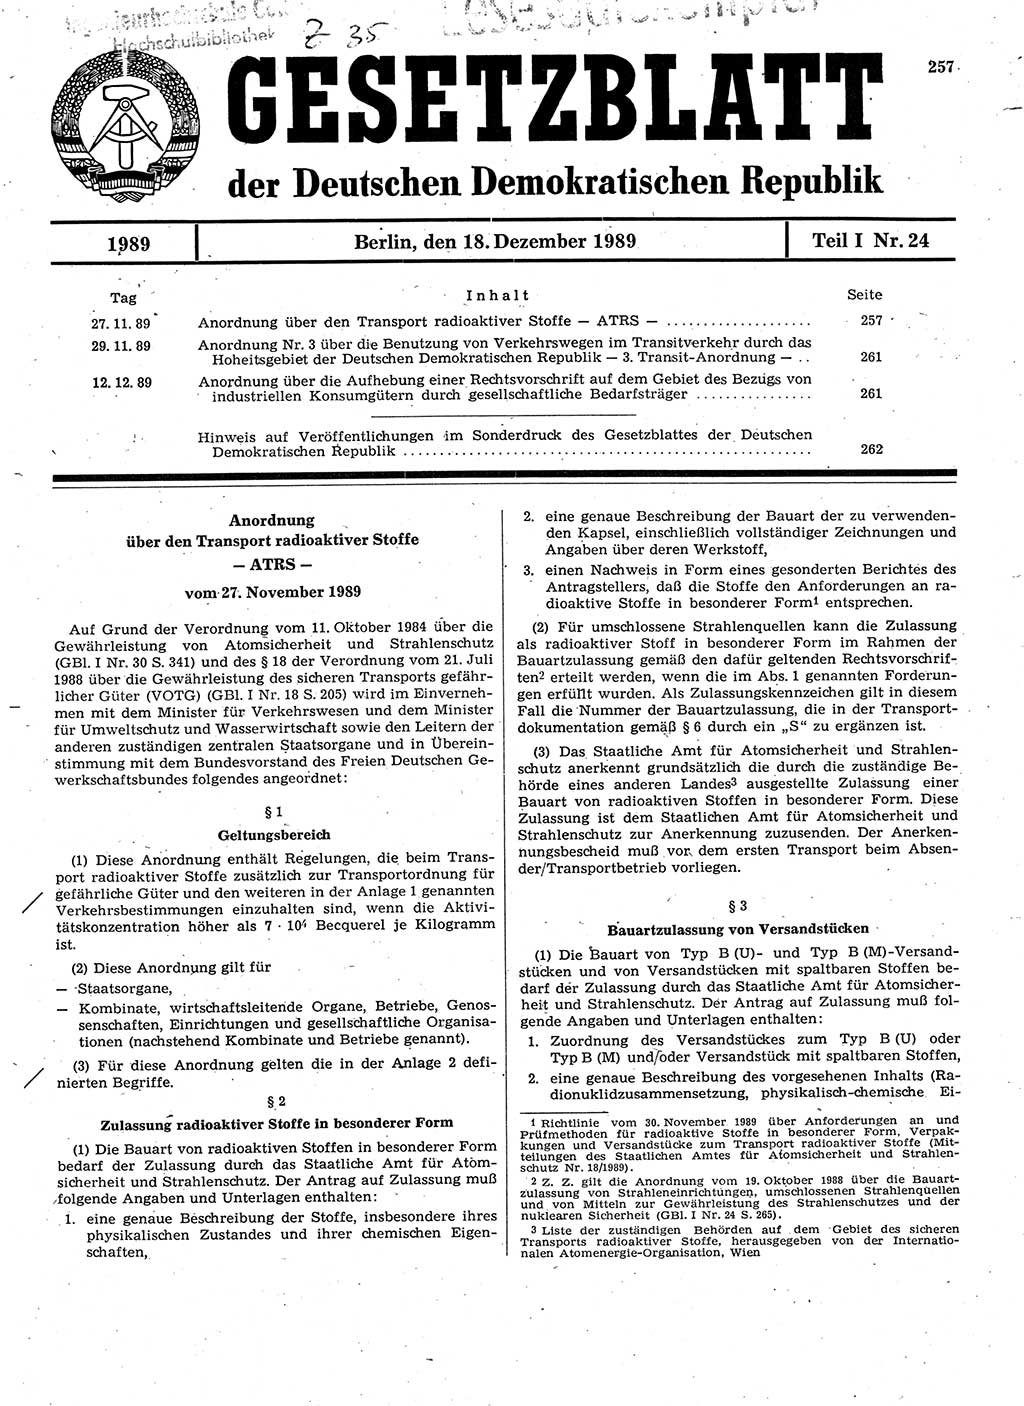 Gesetzblatt (GBl.) der Deutschen Demokratischen Republik (DDR) Teil Ⅰ 1989, Seite 257 (GBl. DDR Ⅰ 1989, S. 257)